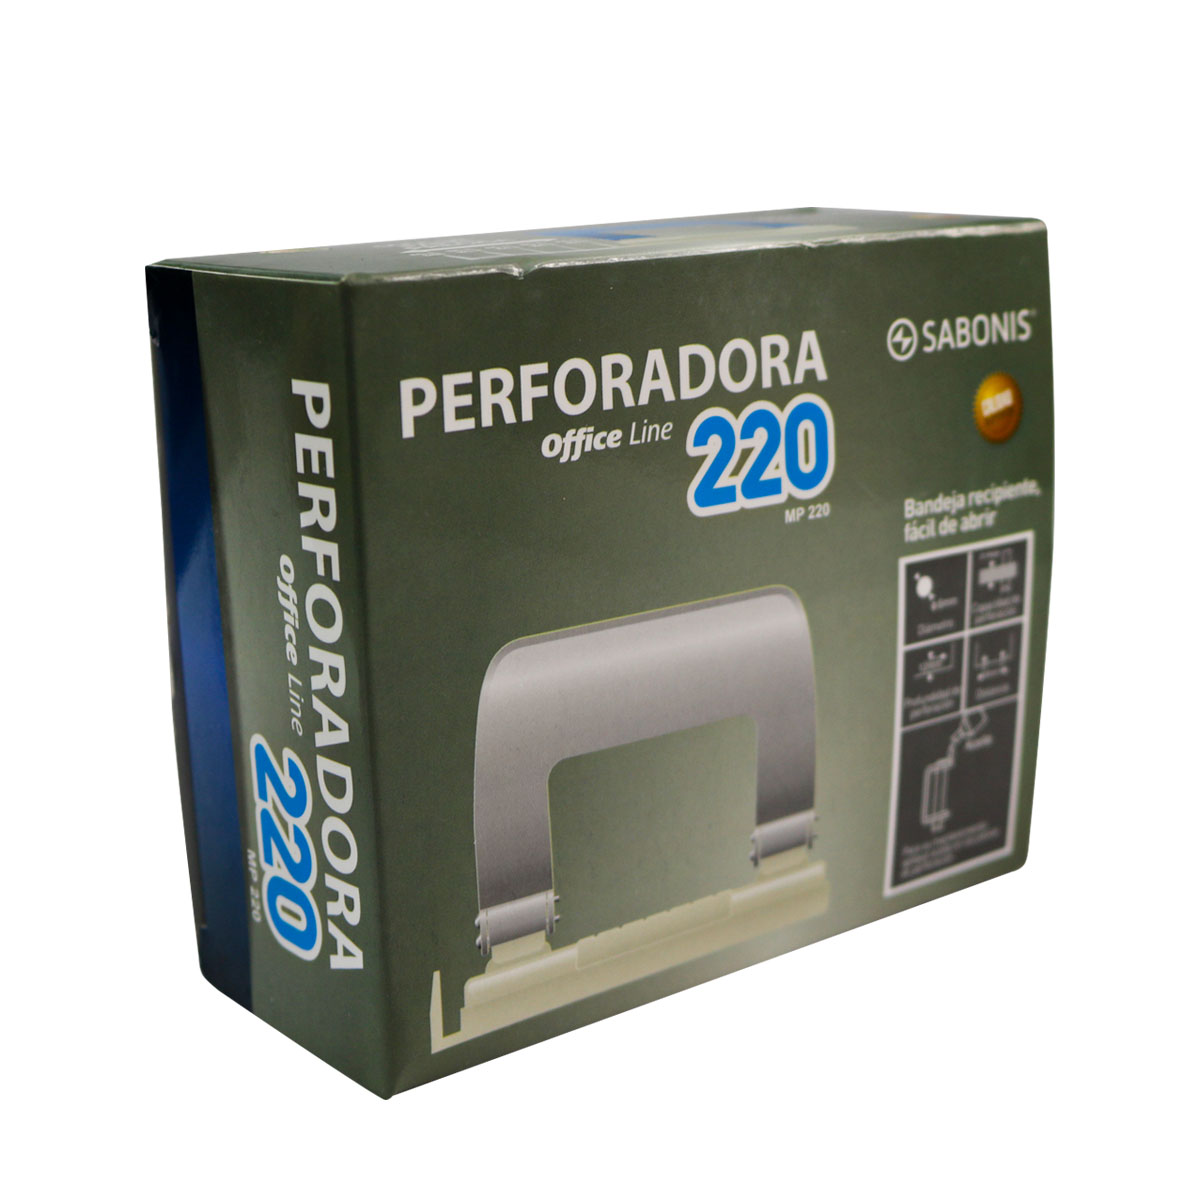 Perforadora Cuerpo Metálico y Porta Residuos de Goma, Capacidad de Perforado 20 Hojas - SABONIS - MP220